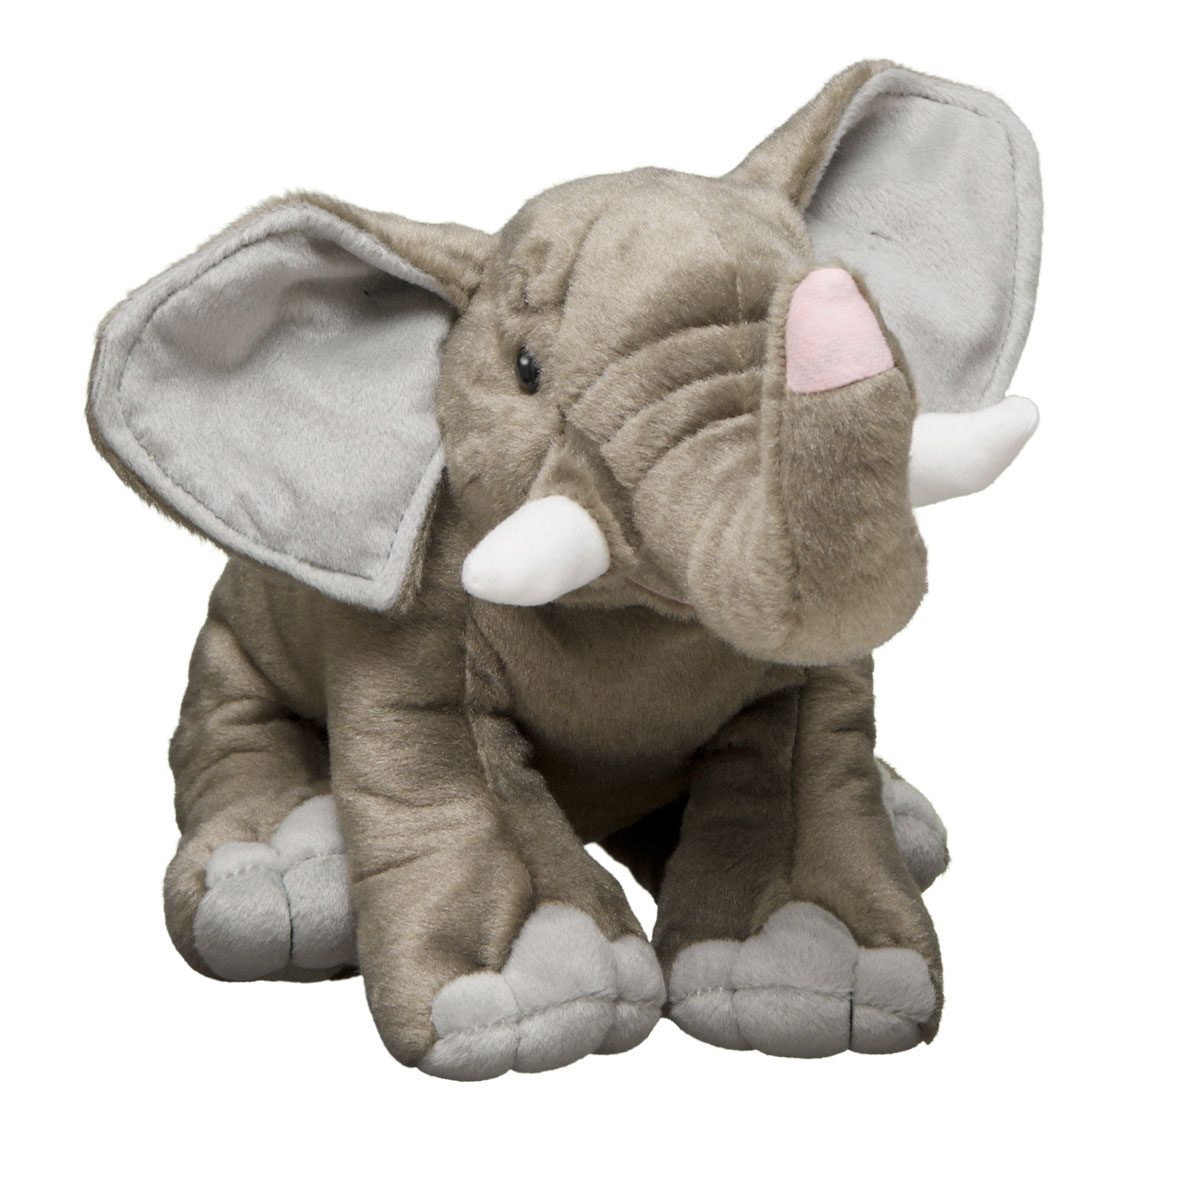 stuffed animal elephant